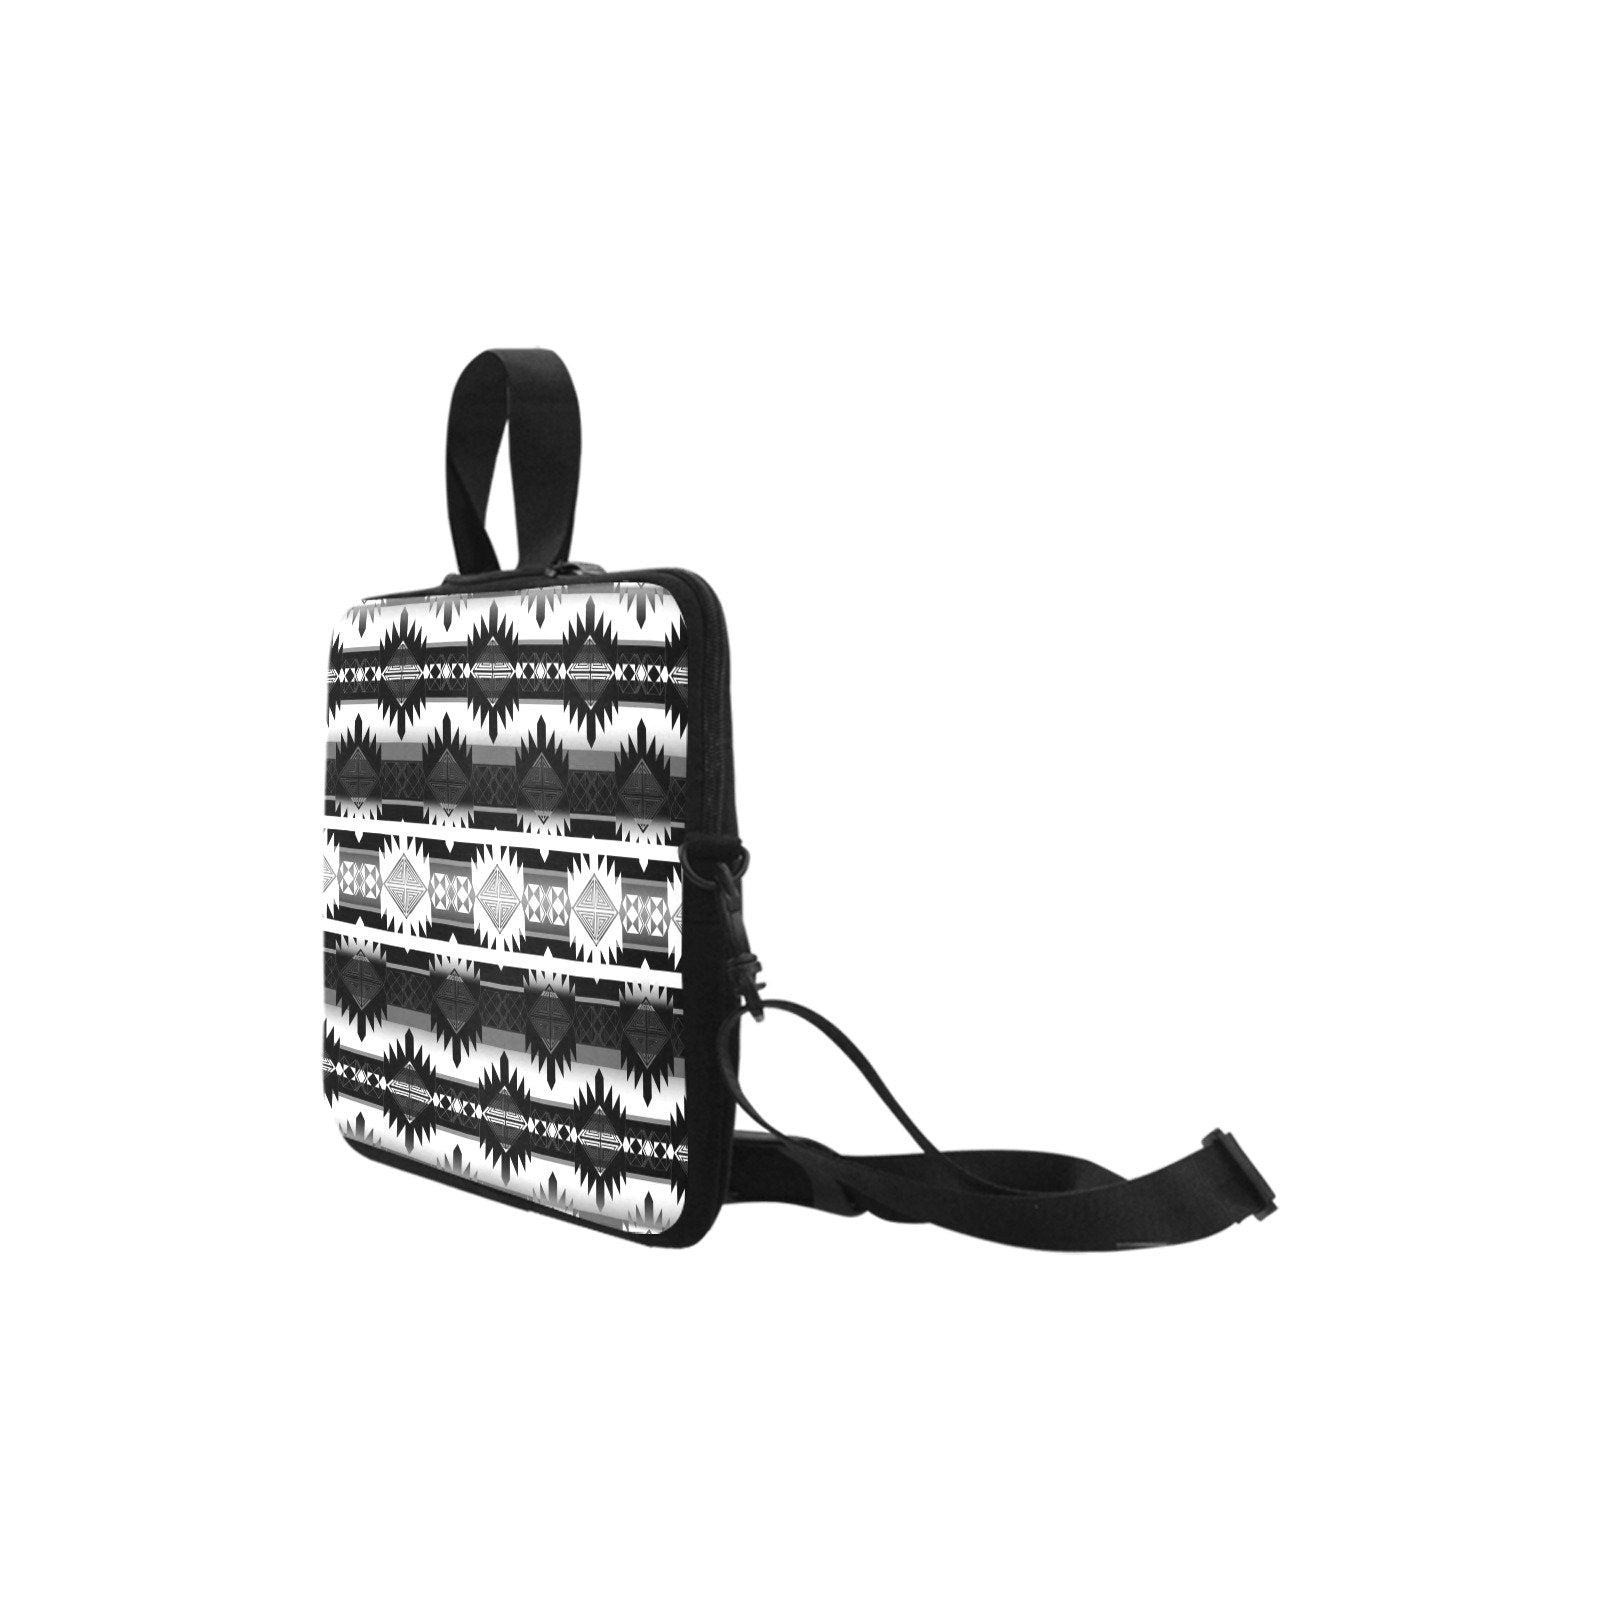 Okotoks Black and White Laptop Handbags 11" bag e-joyer 